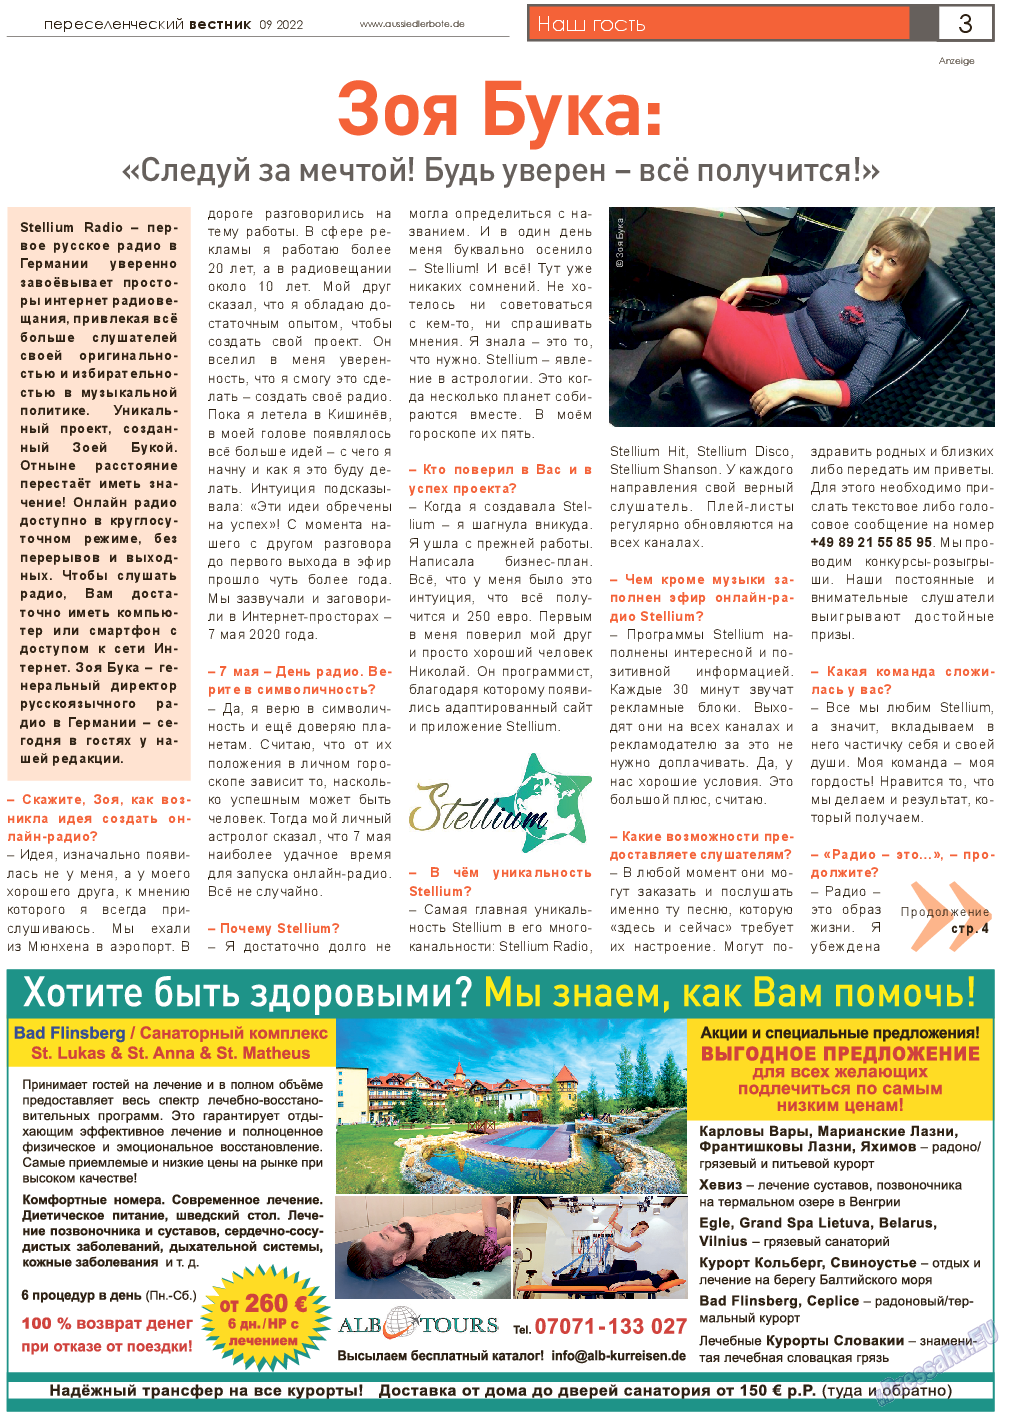 Переселенческий вестник, газета. 2022 №9 стр.3